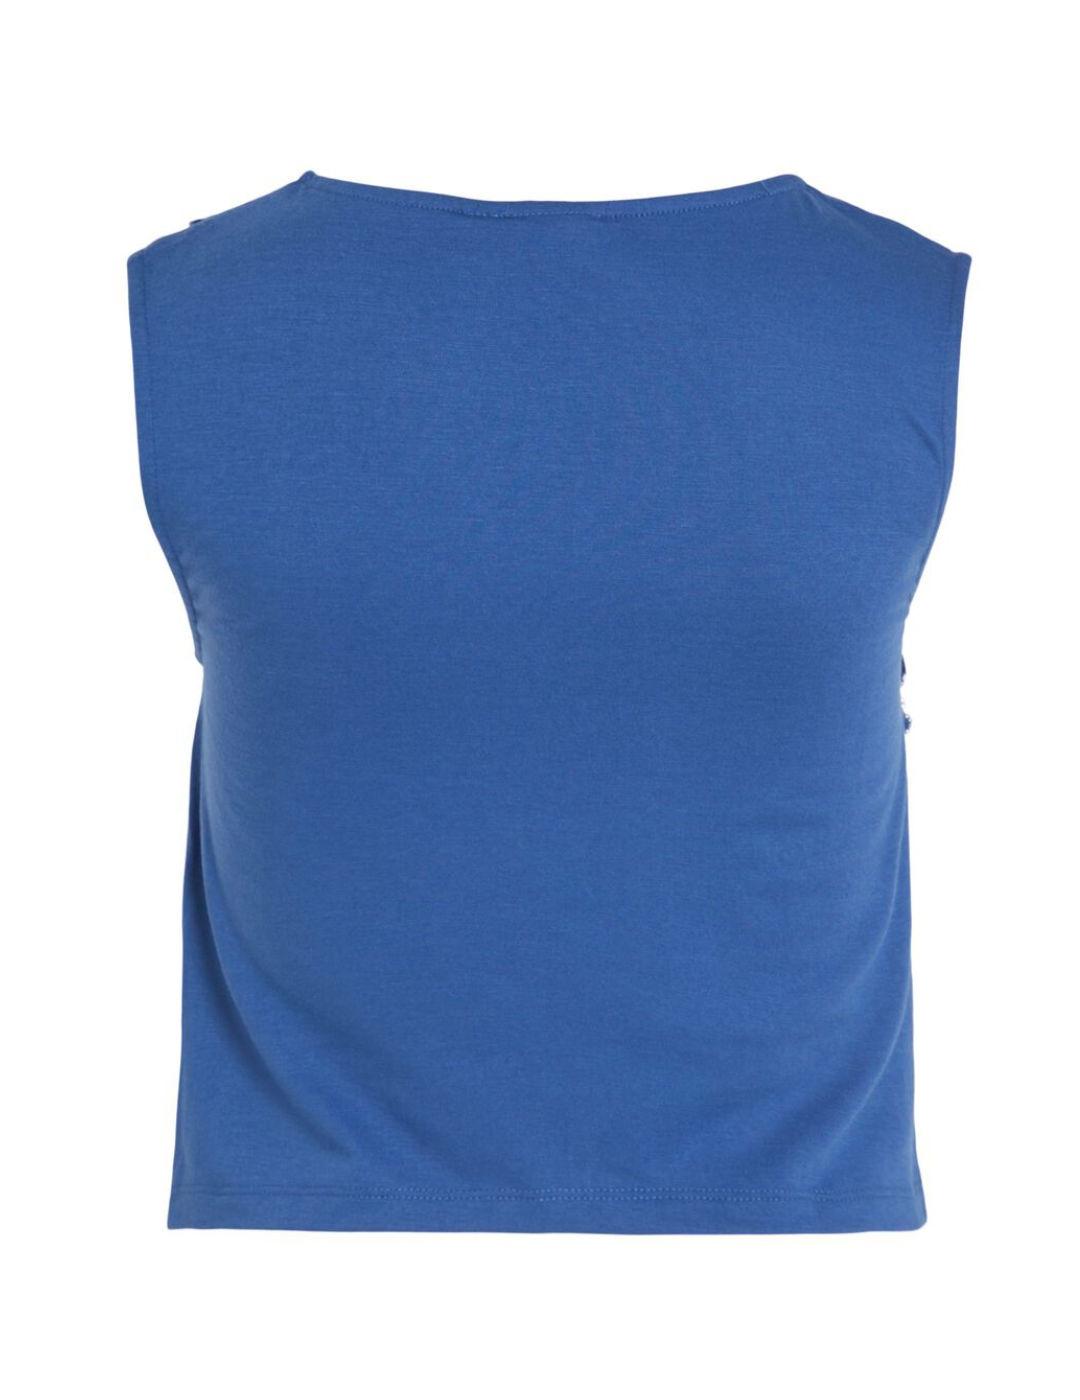 Camiseta Vila Mosto azul eléctrico manga sisa para mujer